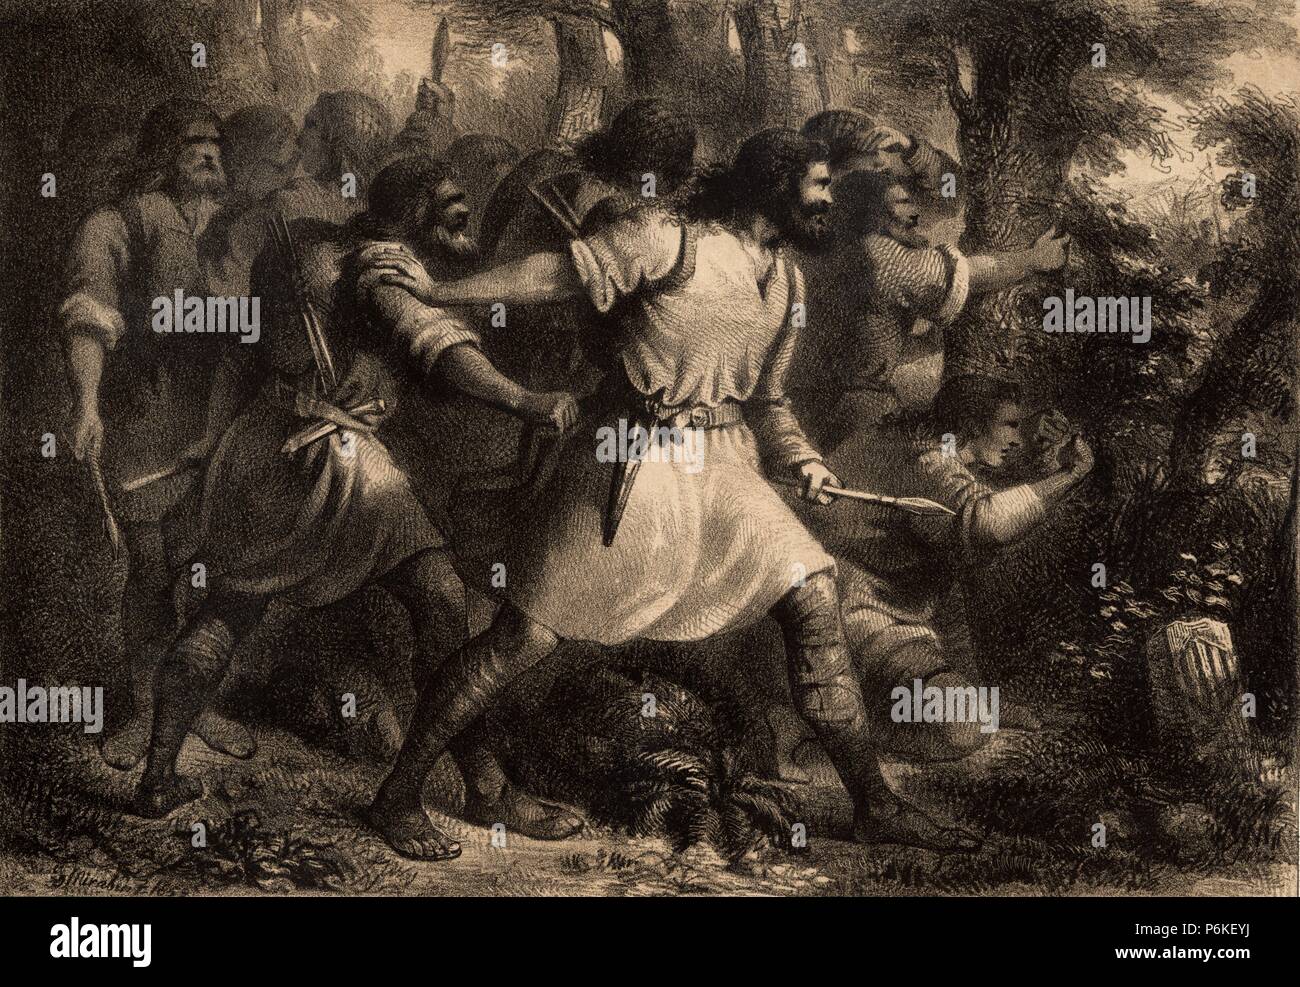 Grupo de almogávares catalanes preparados para una batalla. Grabado de 1859. Stock Photo